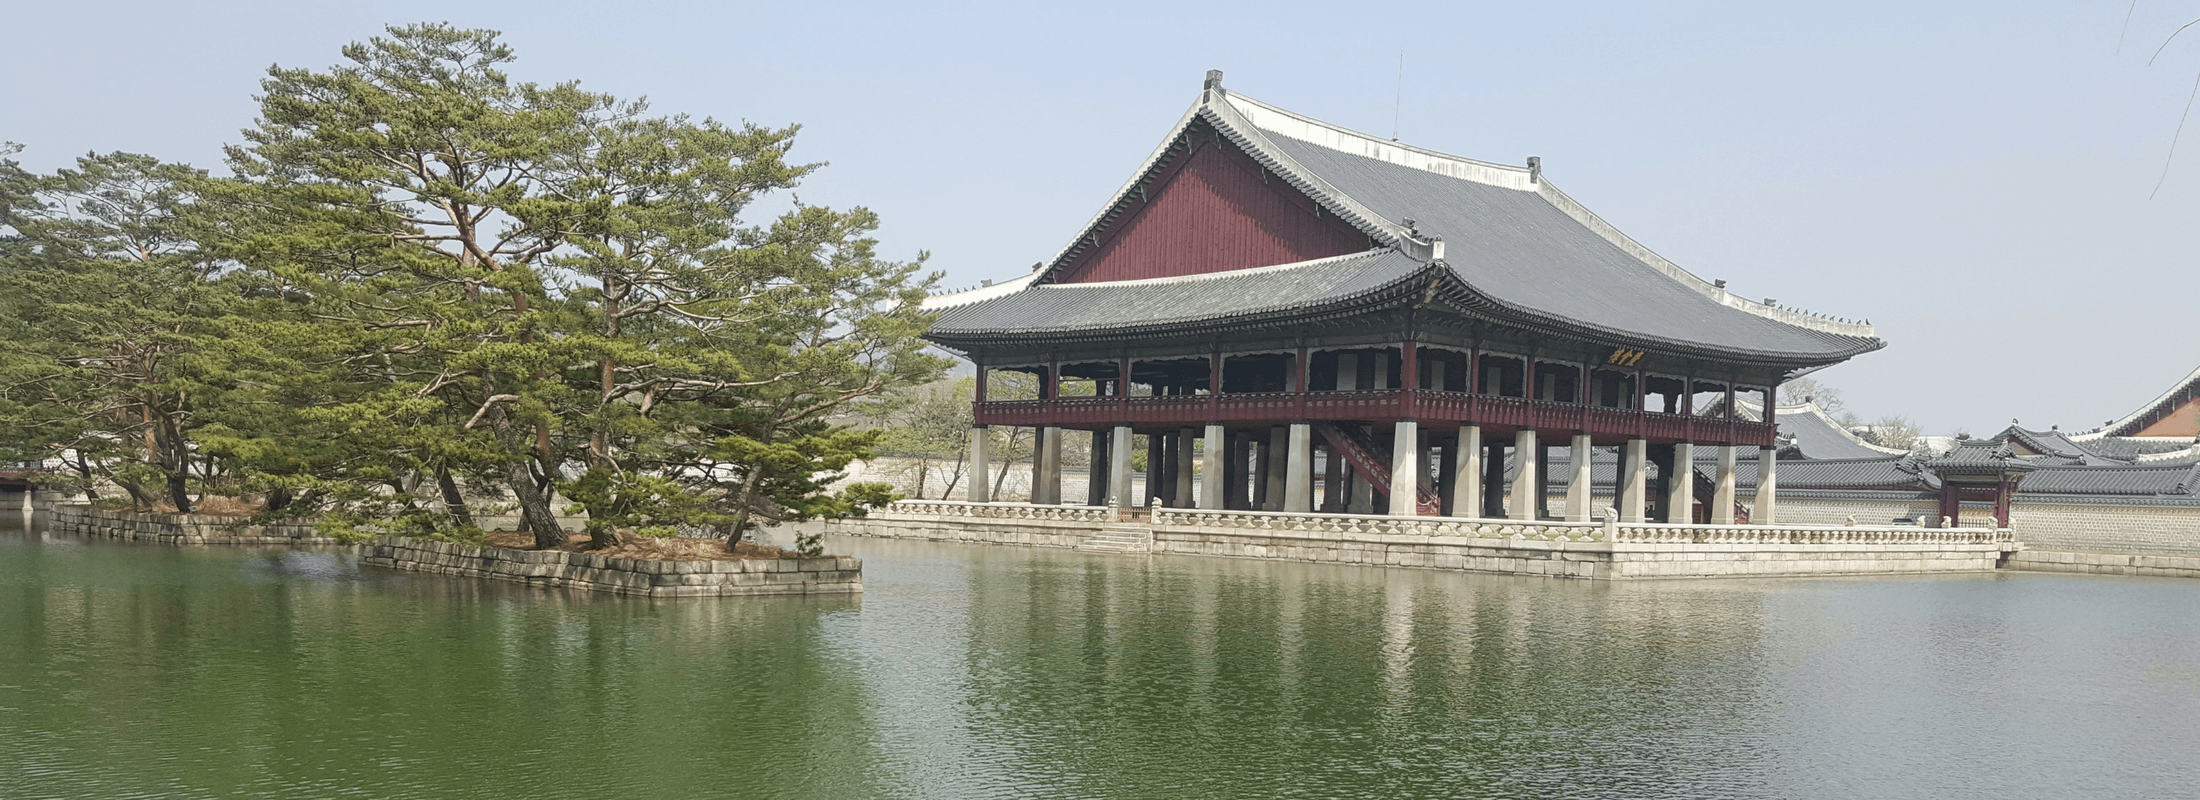 Gyeongbokgung Palace A History Walk In South Korea - 